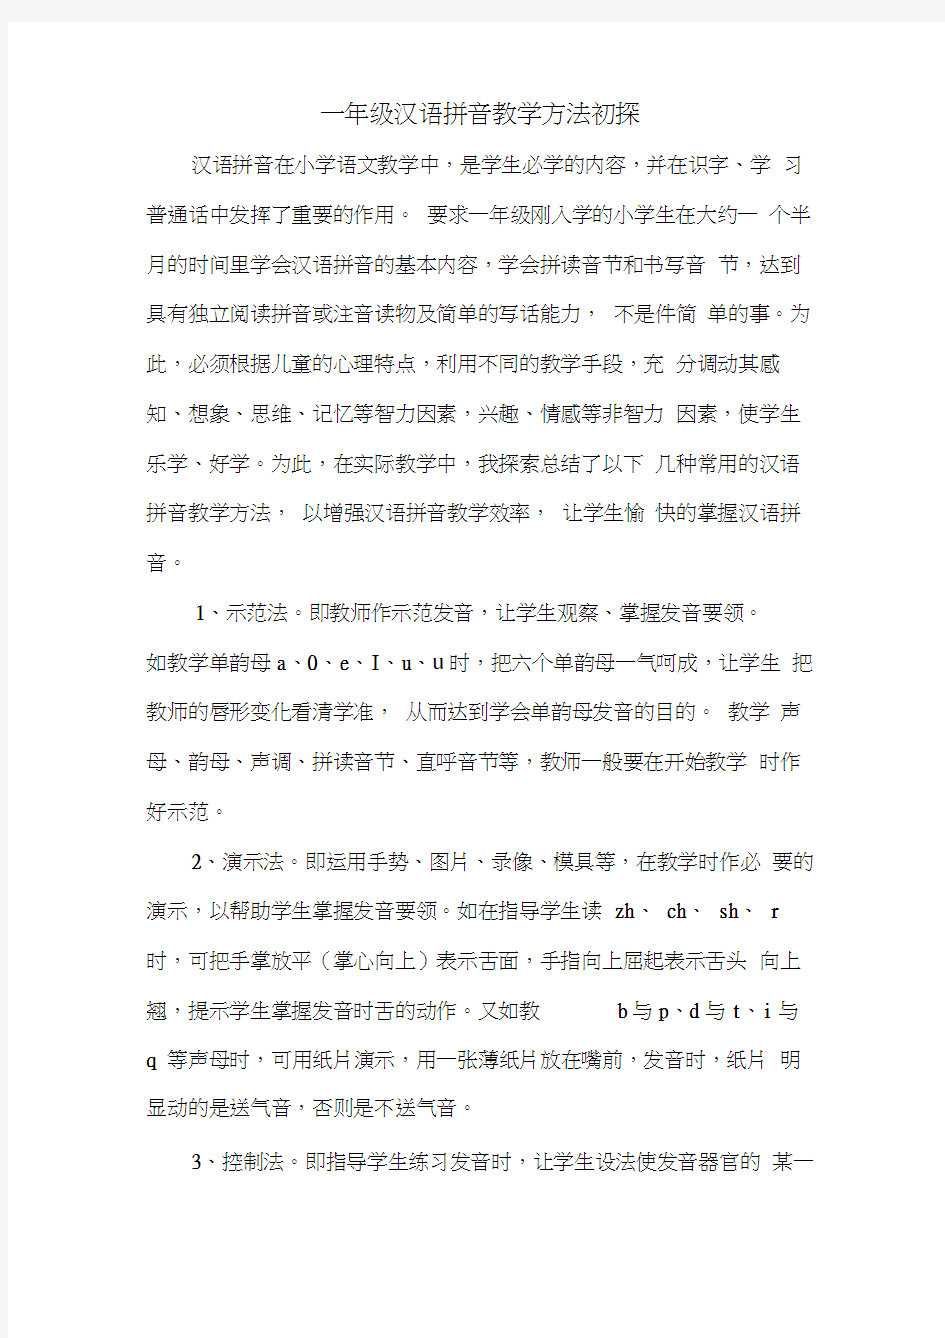 一年级汉语拼音教学方法初探(20200718100522)